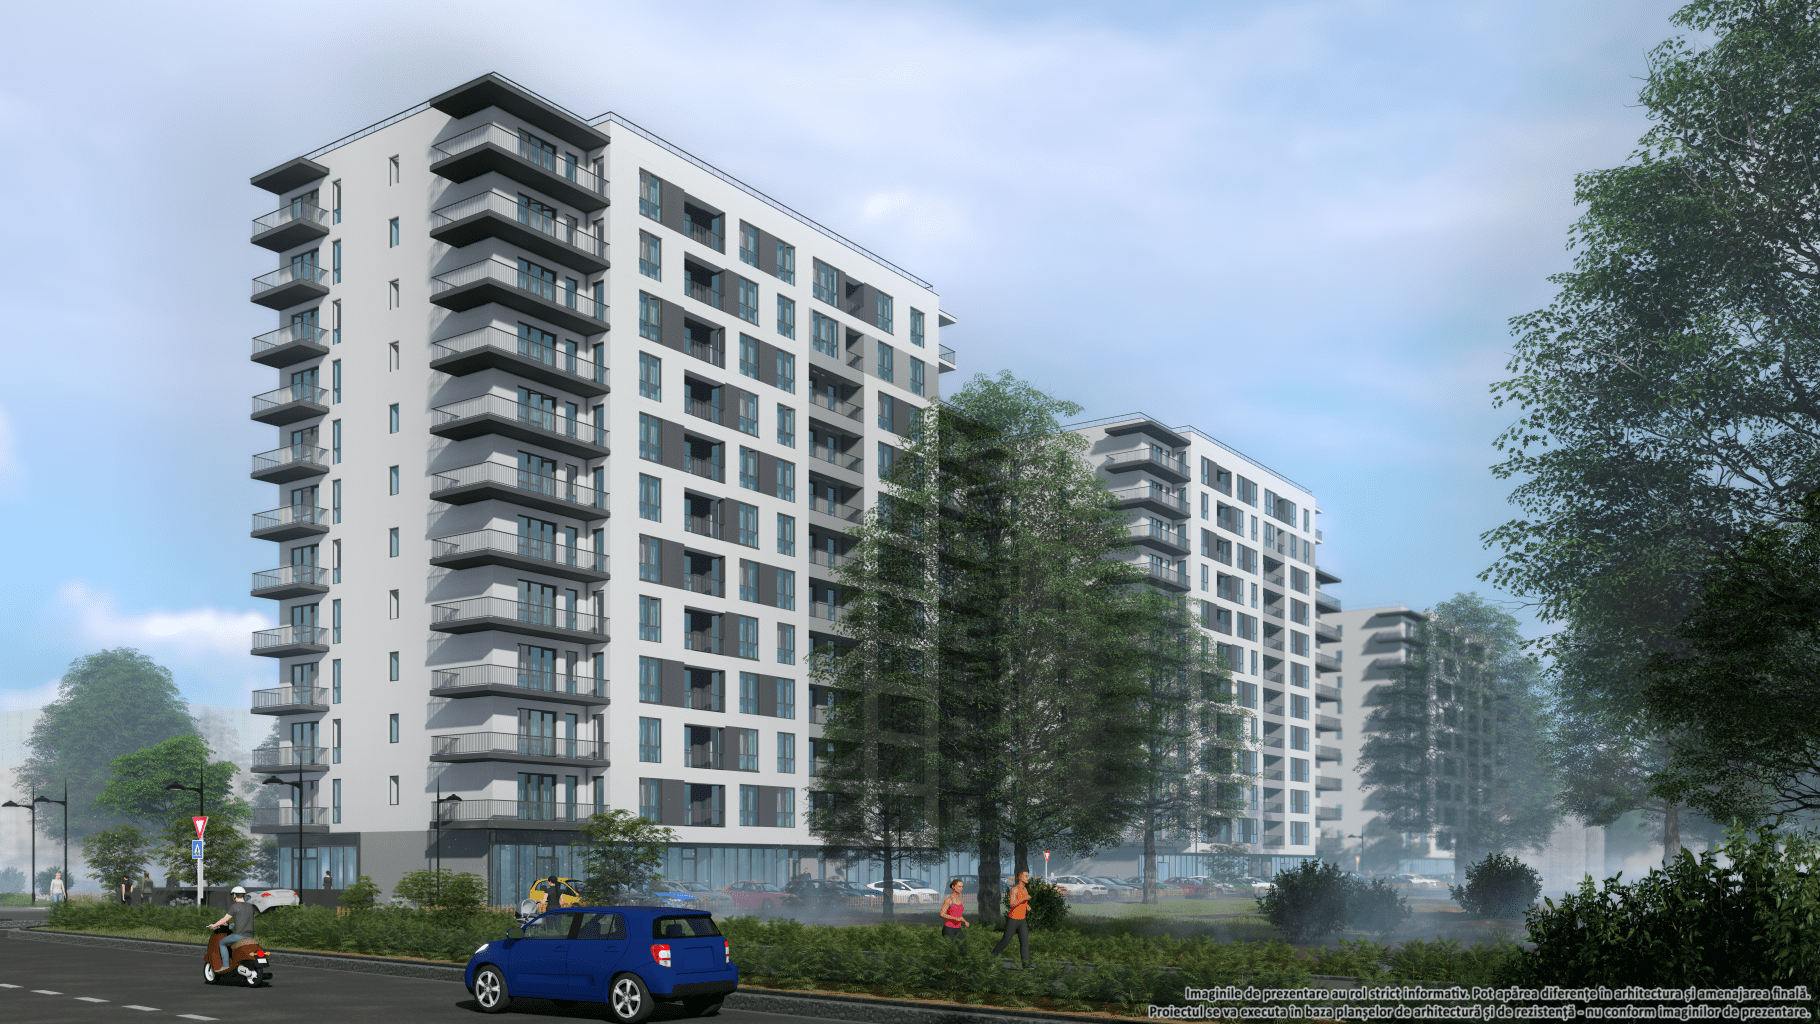 Sungate Apartments 1 - Interdraw lansează prima investiție majoră pe piața rezidențială din București, Sungate Apartments